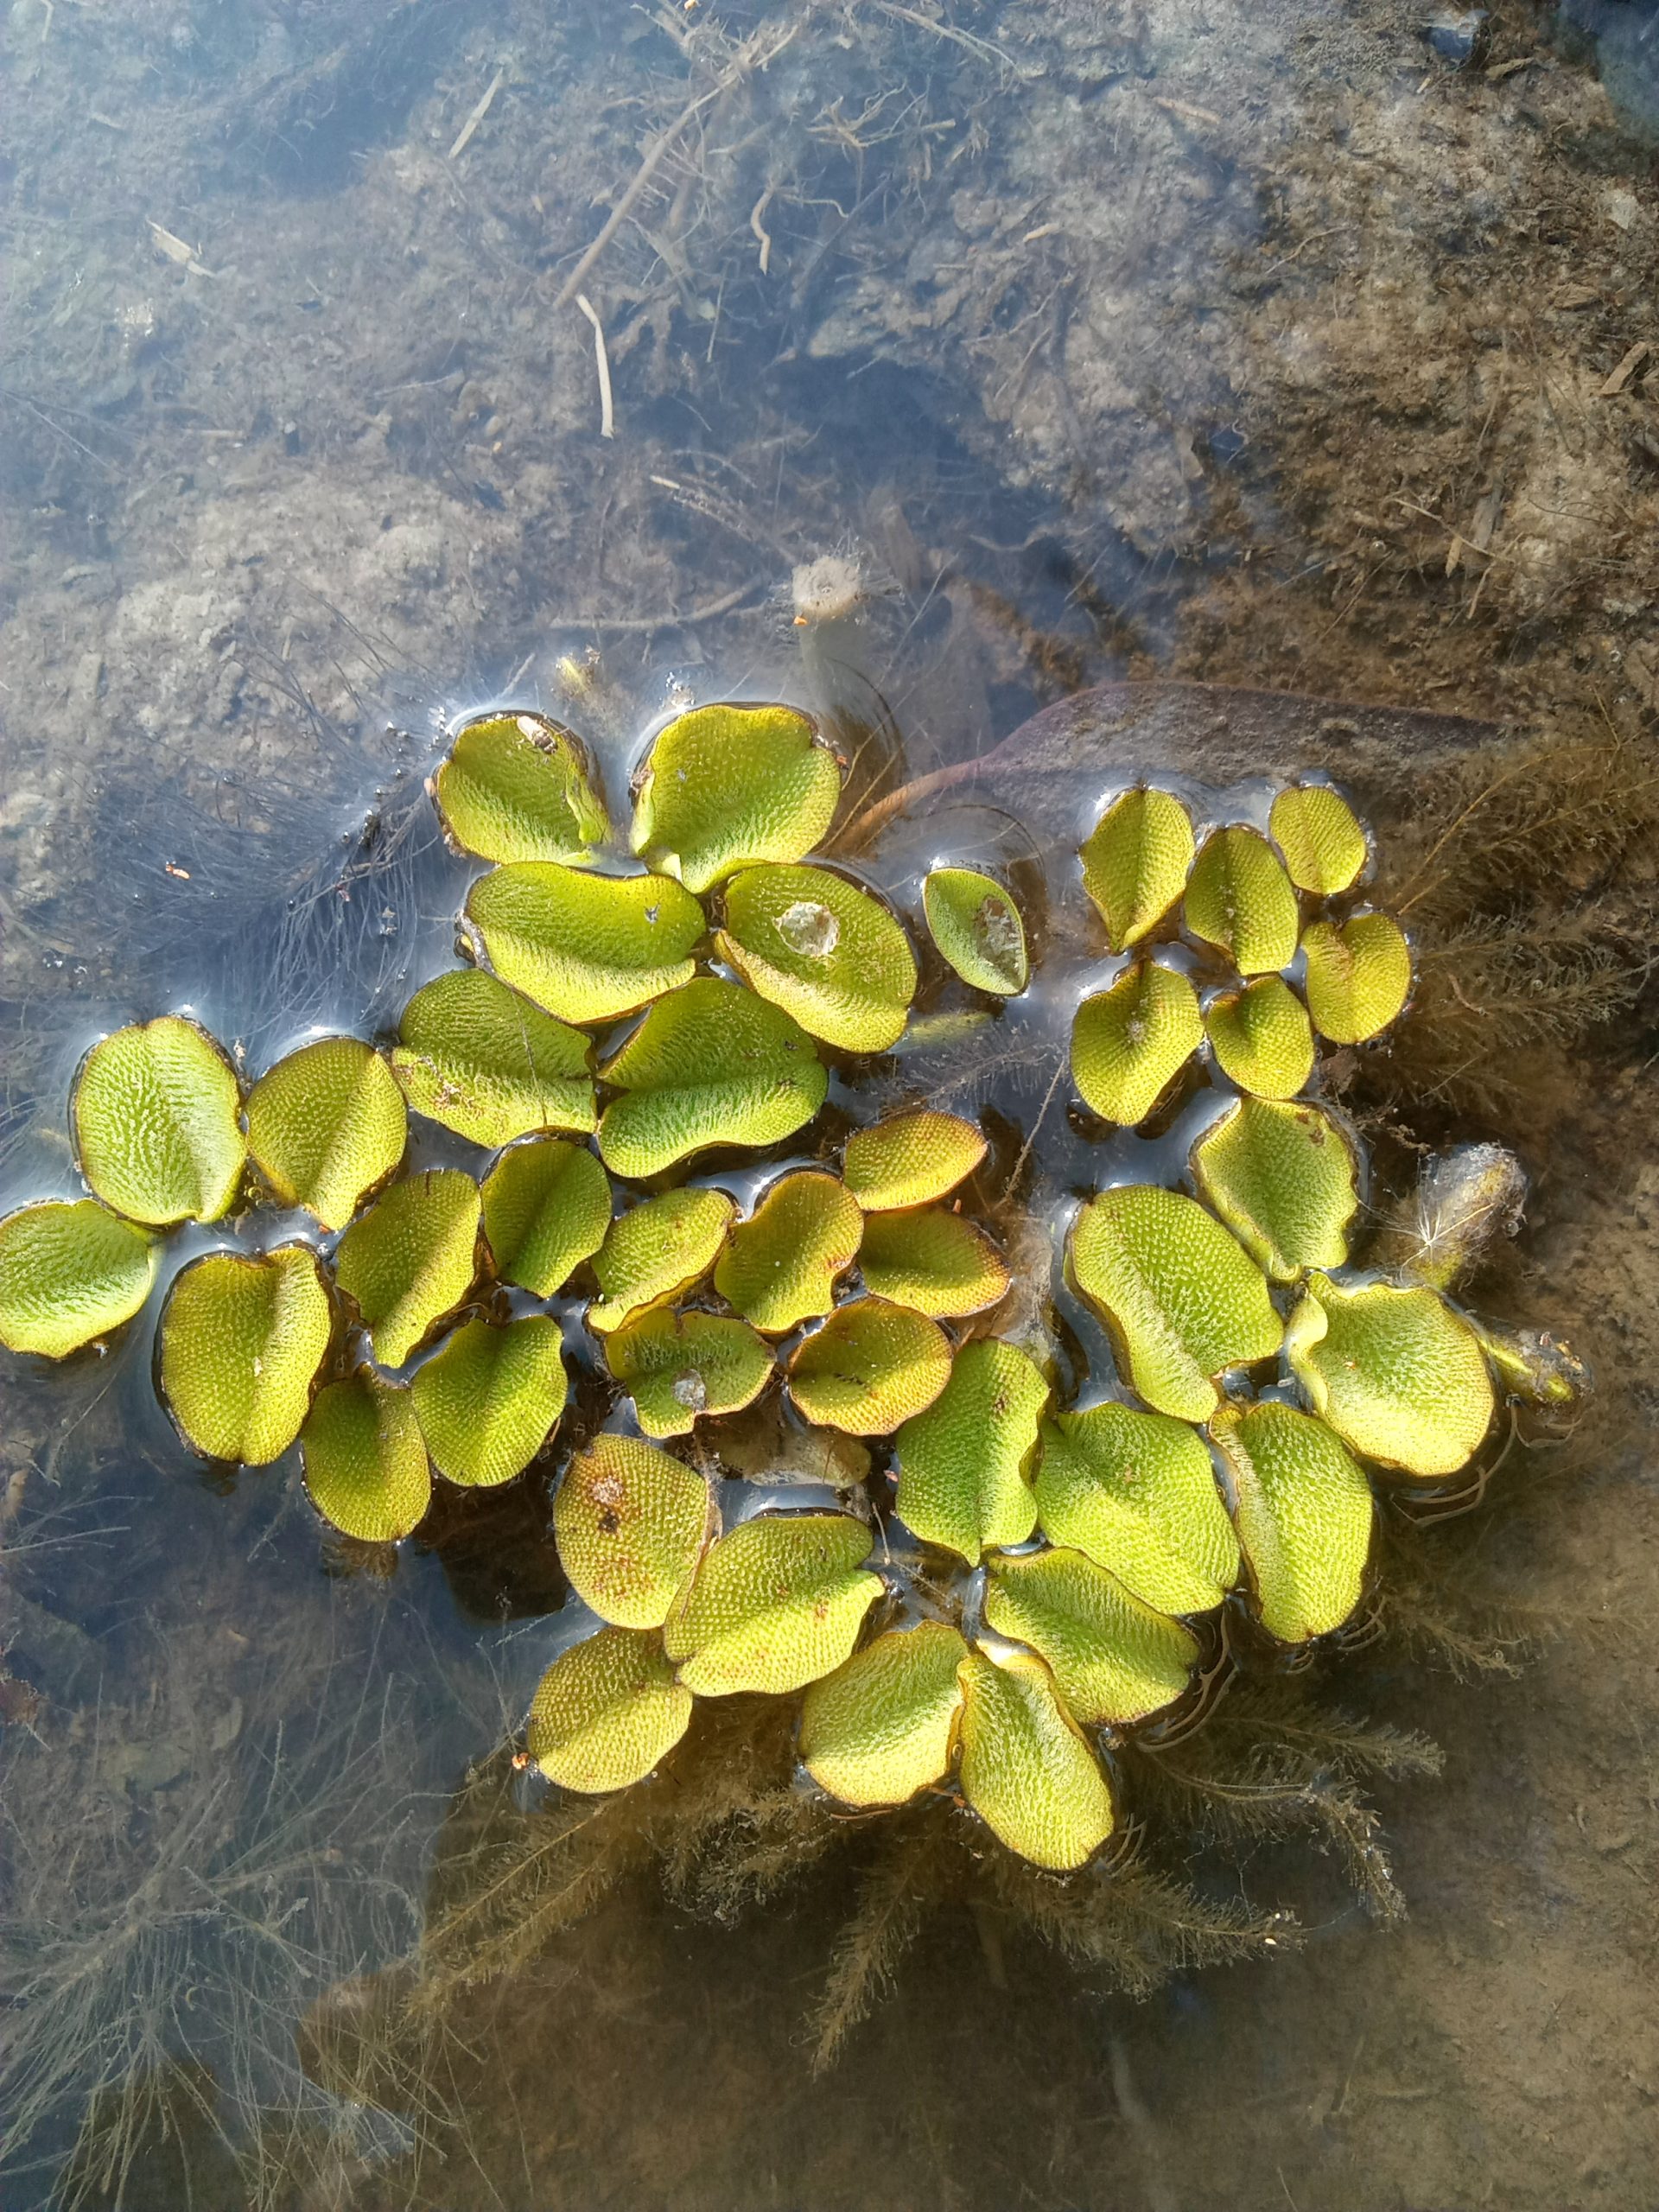 An aquatic plant